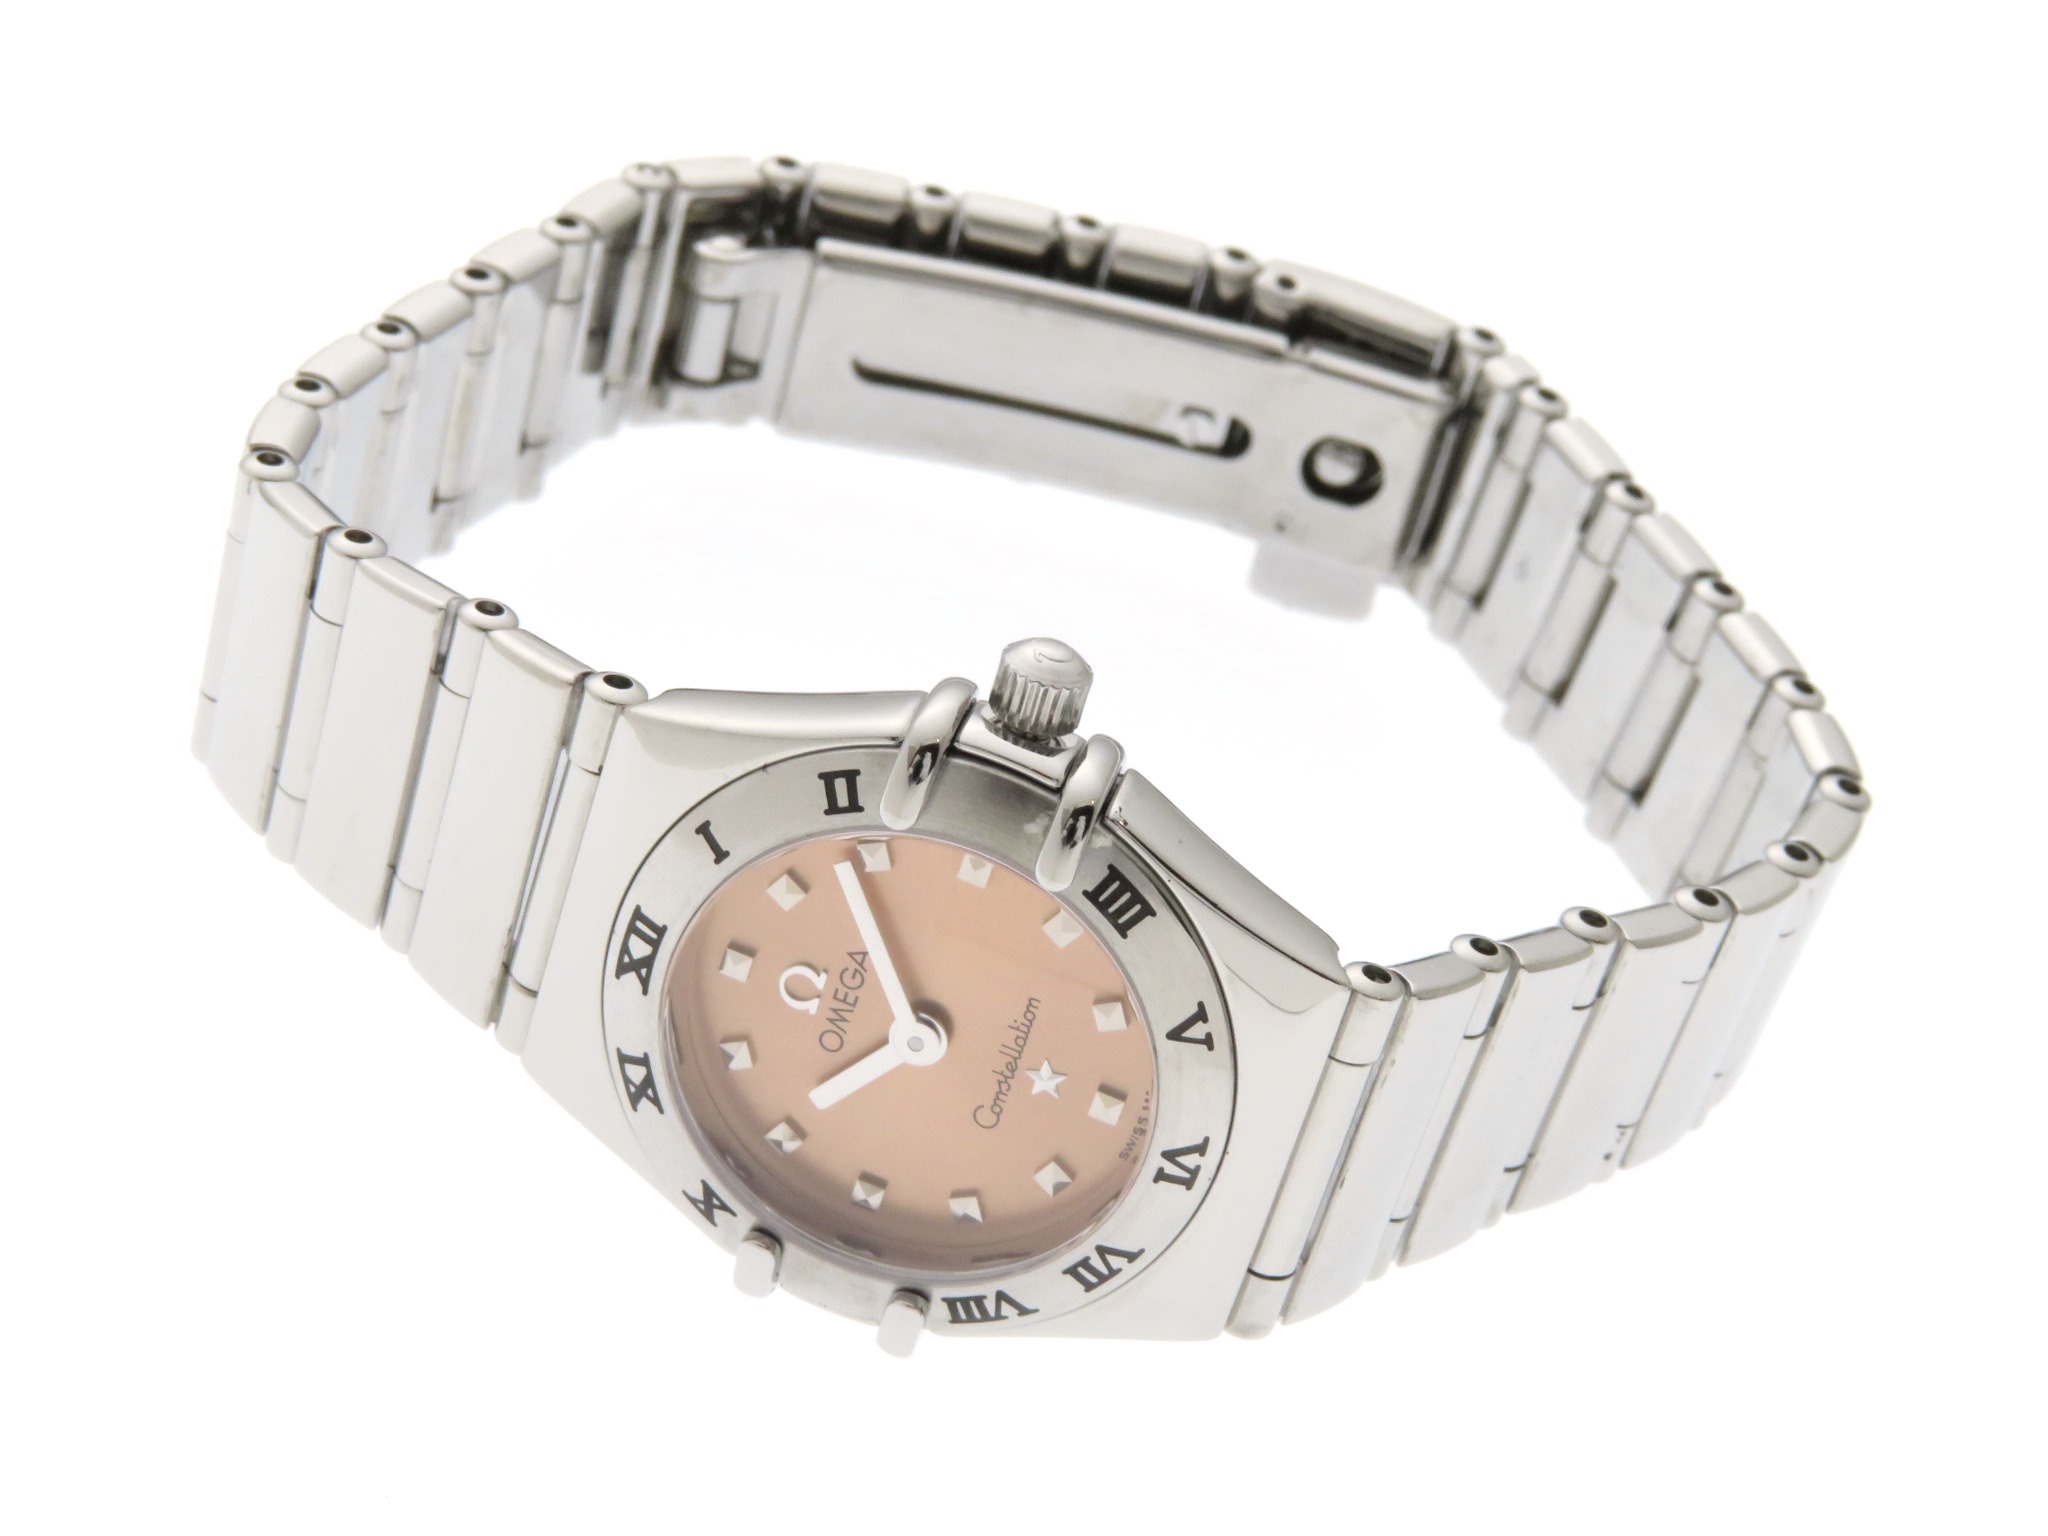 OMEGA(オメガ) 腕時計 1561.71 レディース